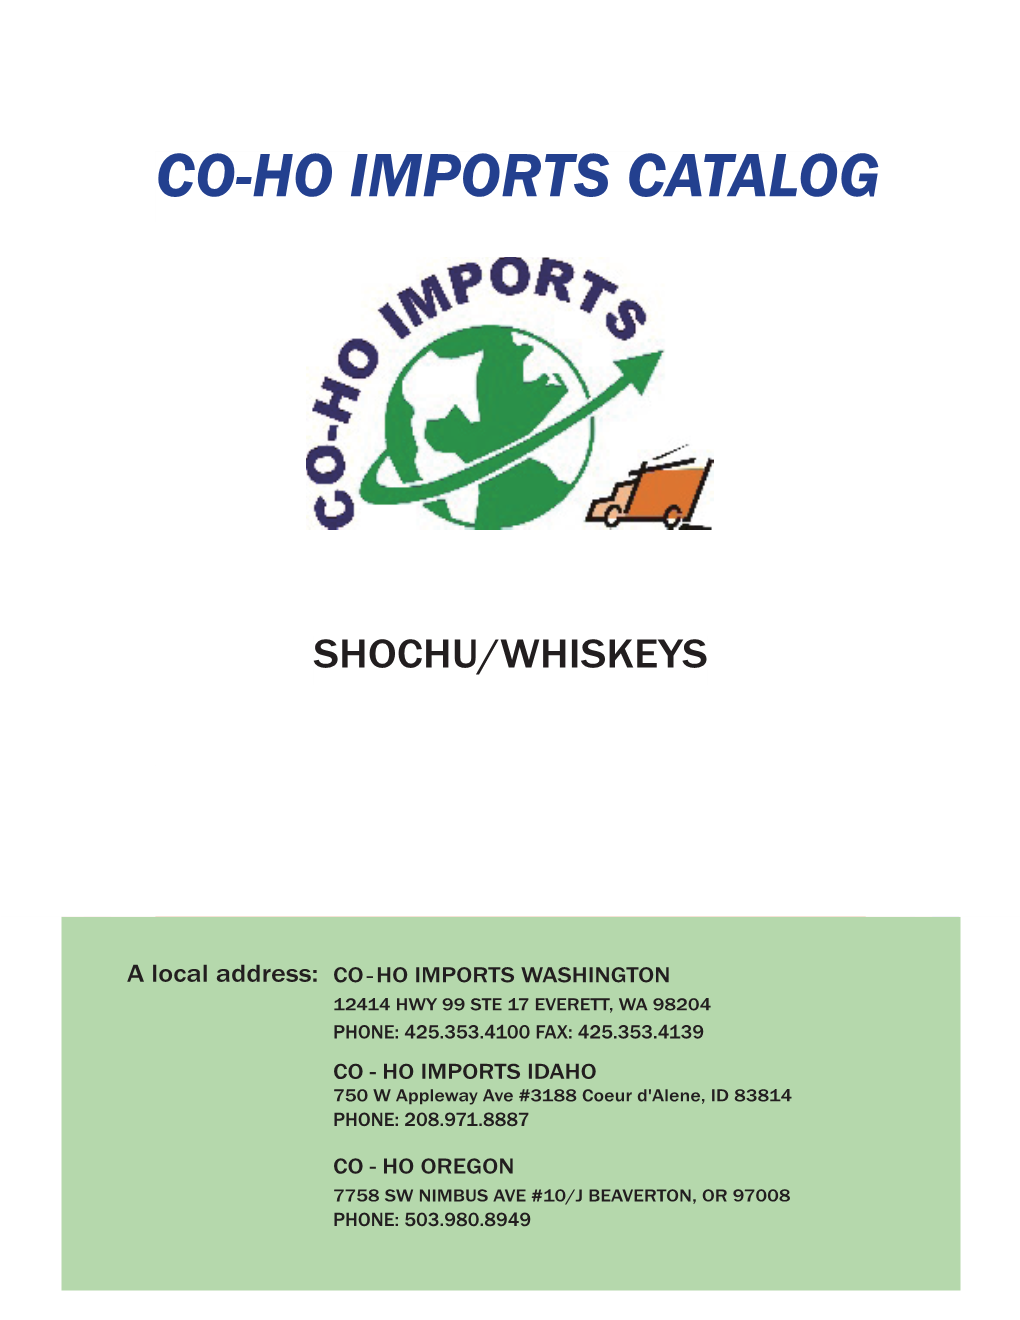 Co-Ho Imports Catalog